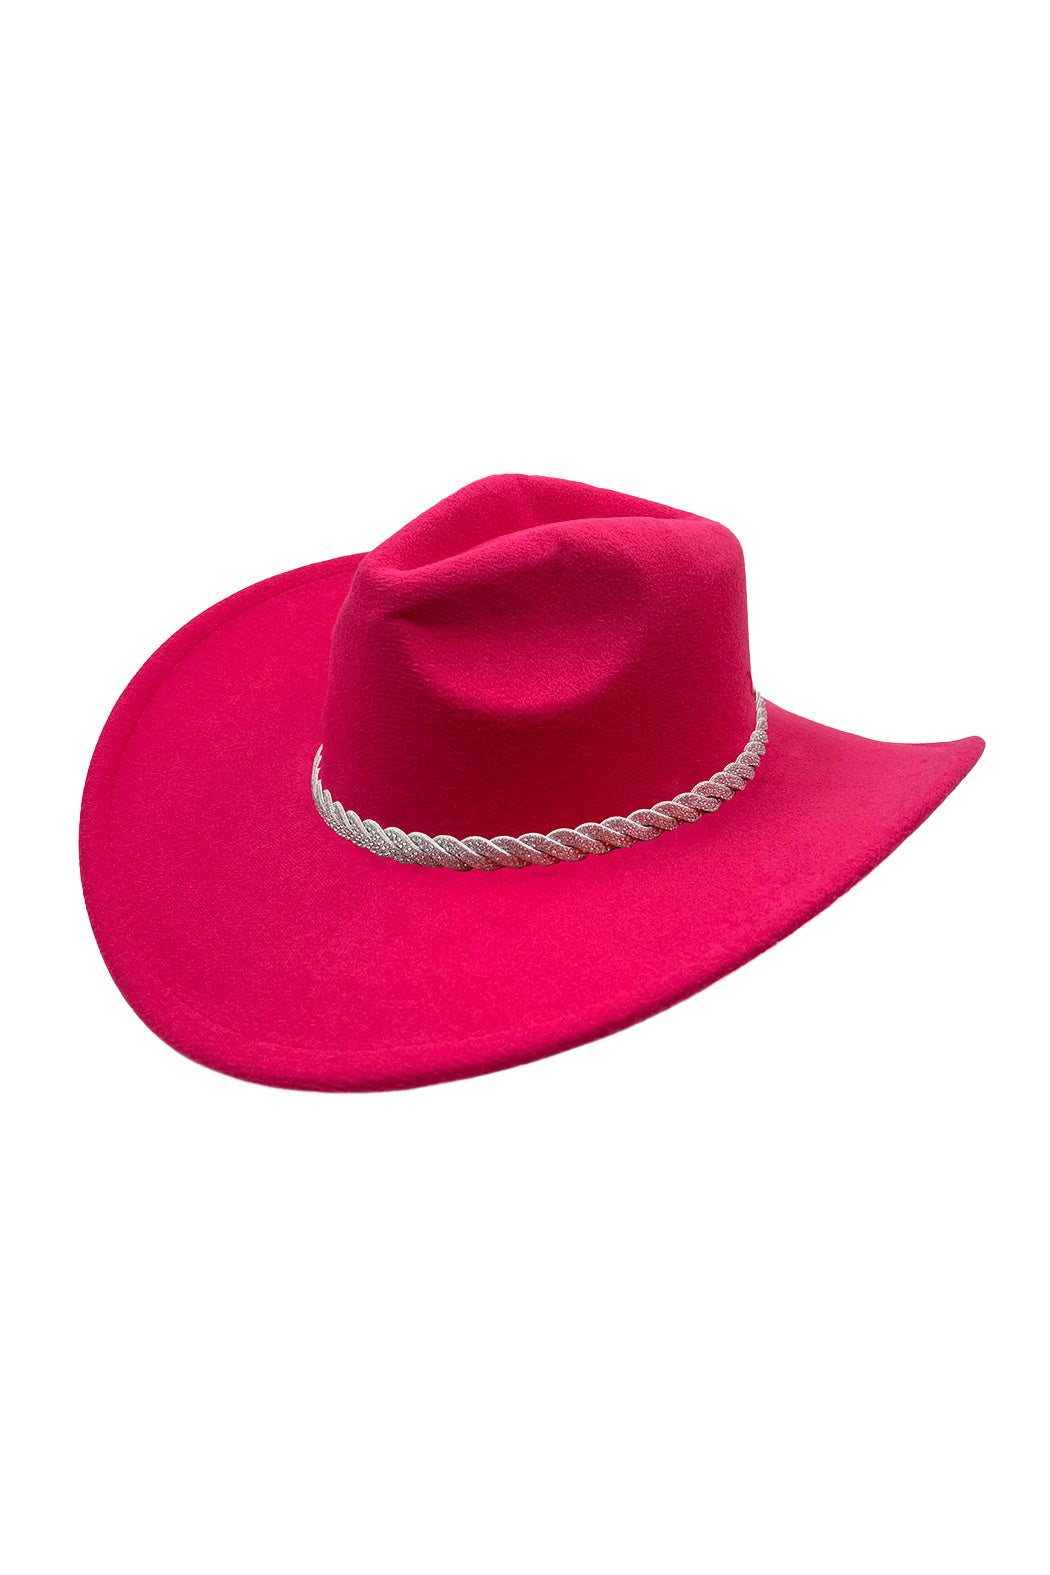 Twisted Crystal Cowboy Hat